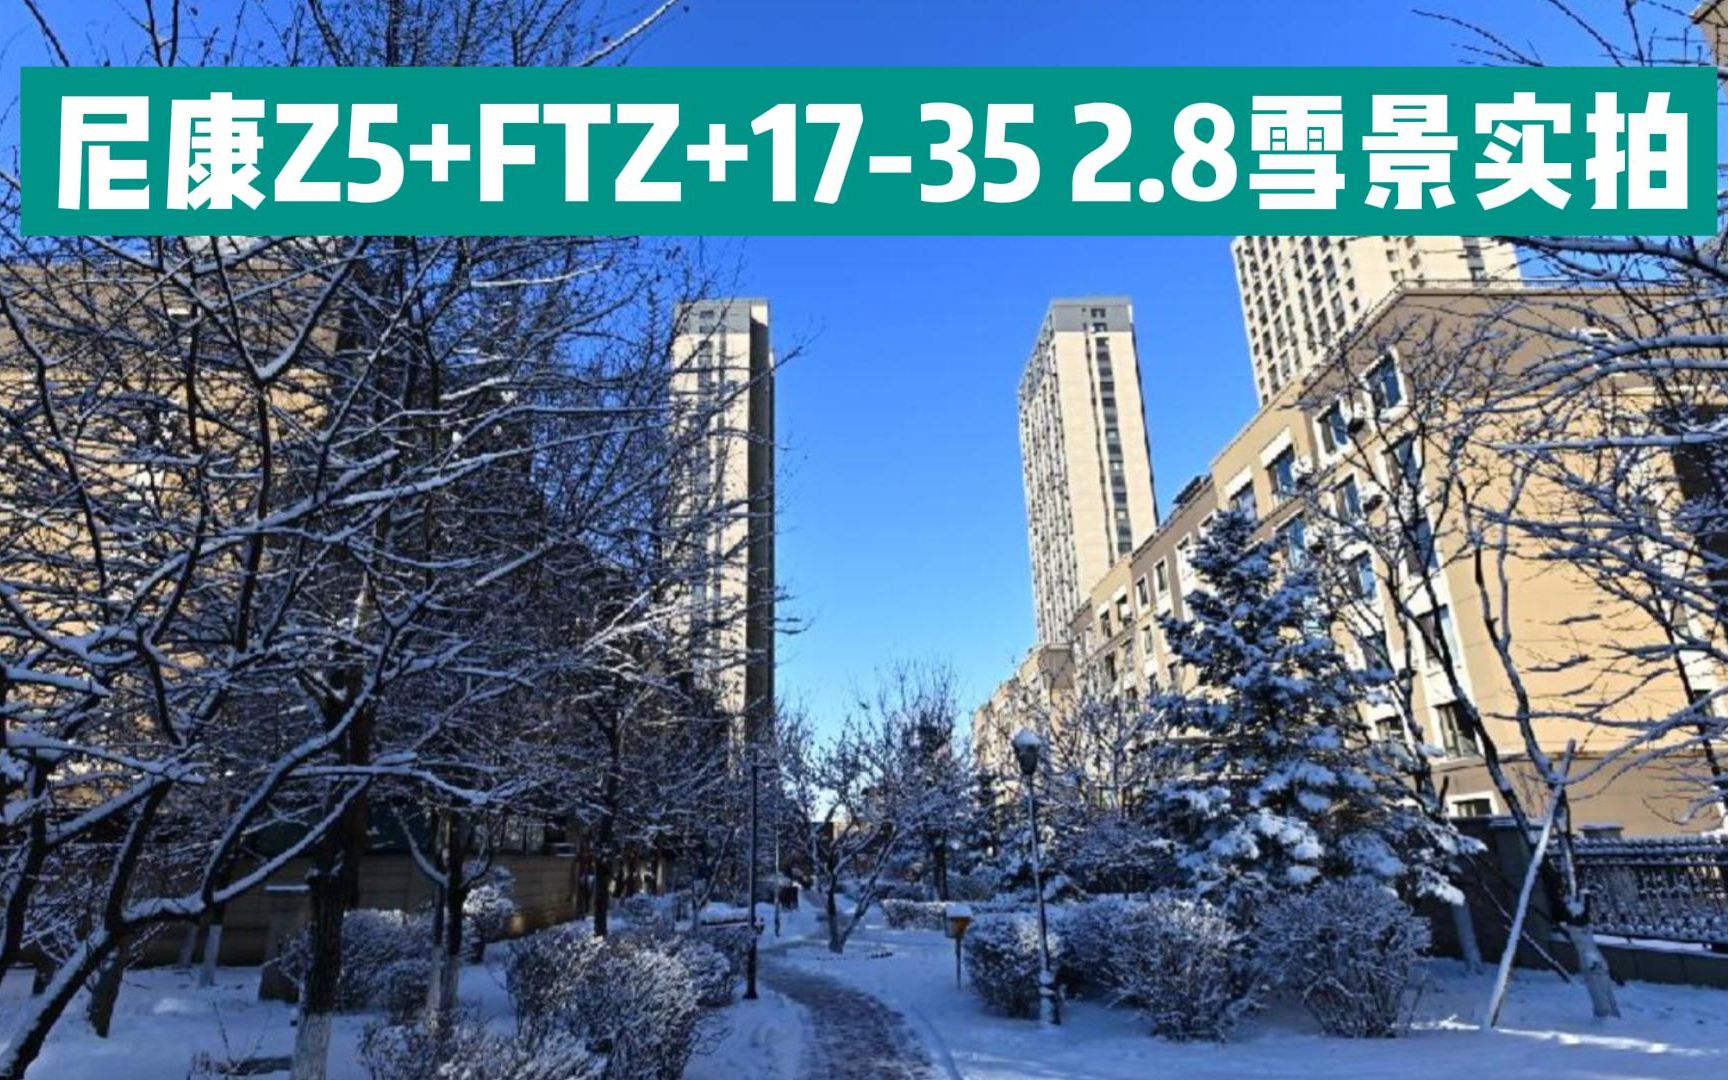 尼康Z5+FTZ+金广角17-35 2.8雪景实拍，锐利通透，质感层次感很好